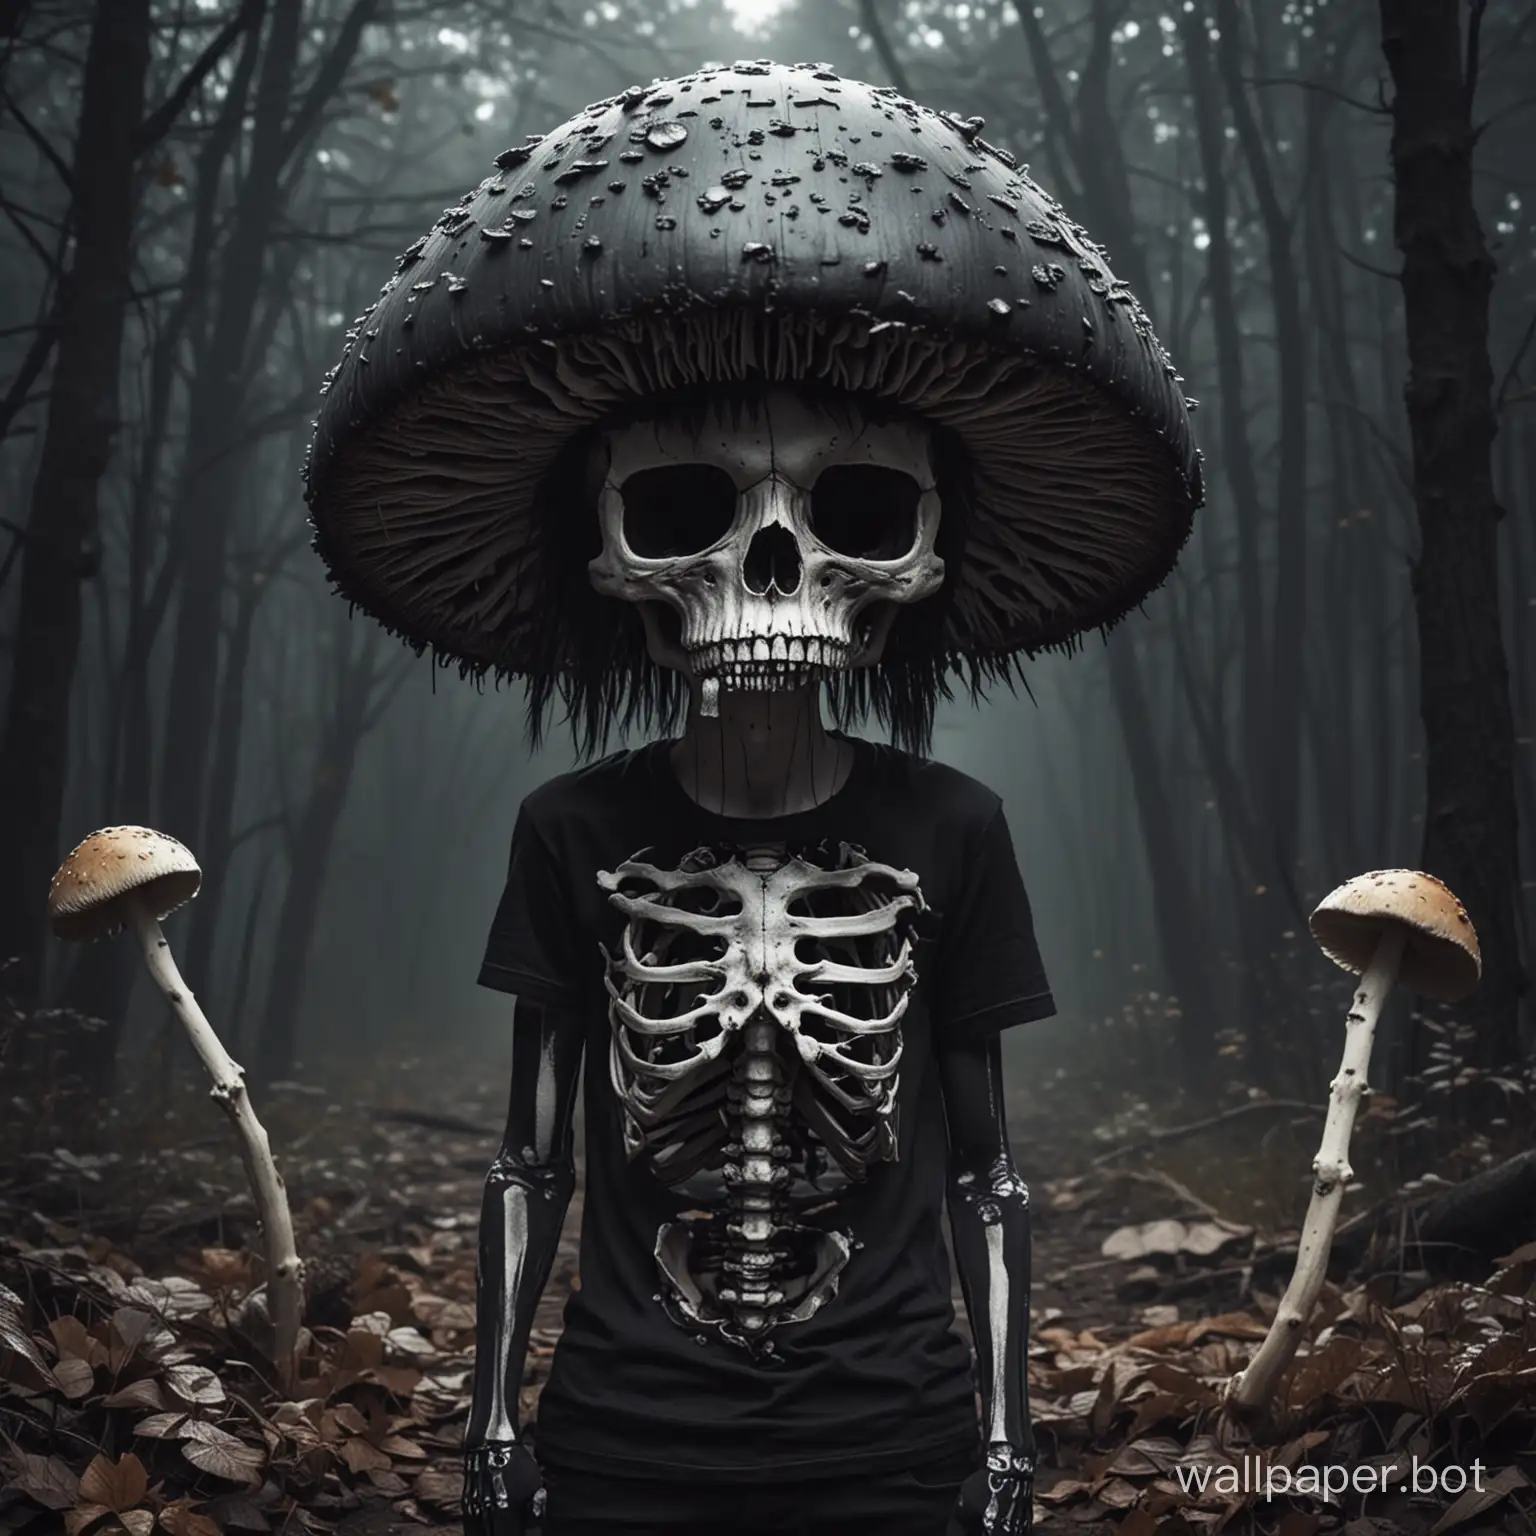 Brooding-Mushroom-Skeleton-Gamer-in-Dark-Attire